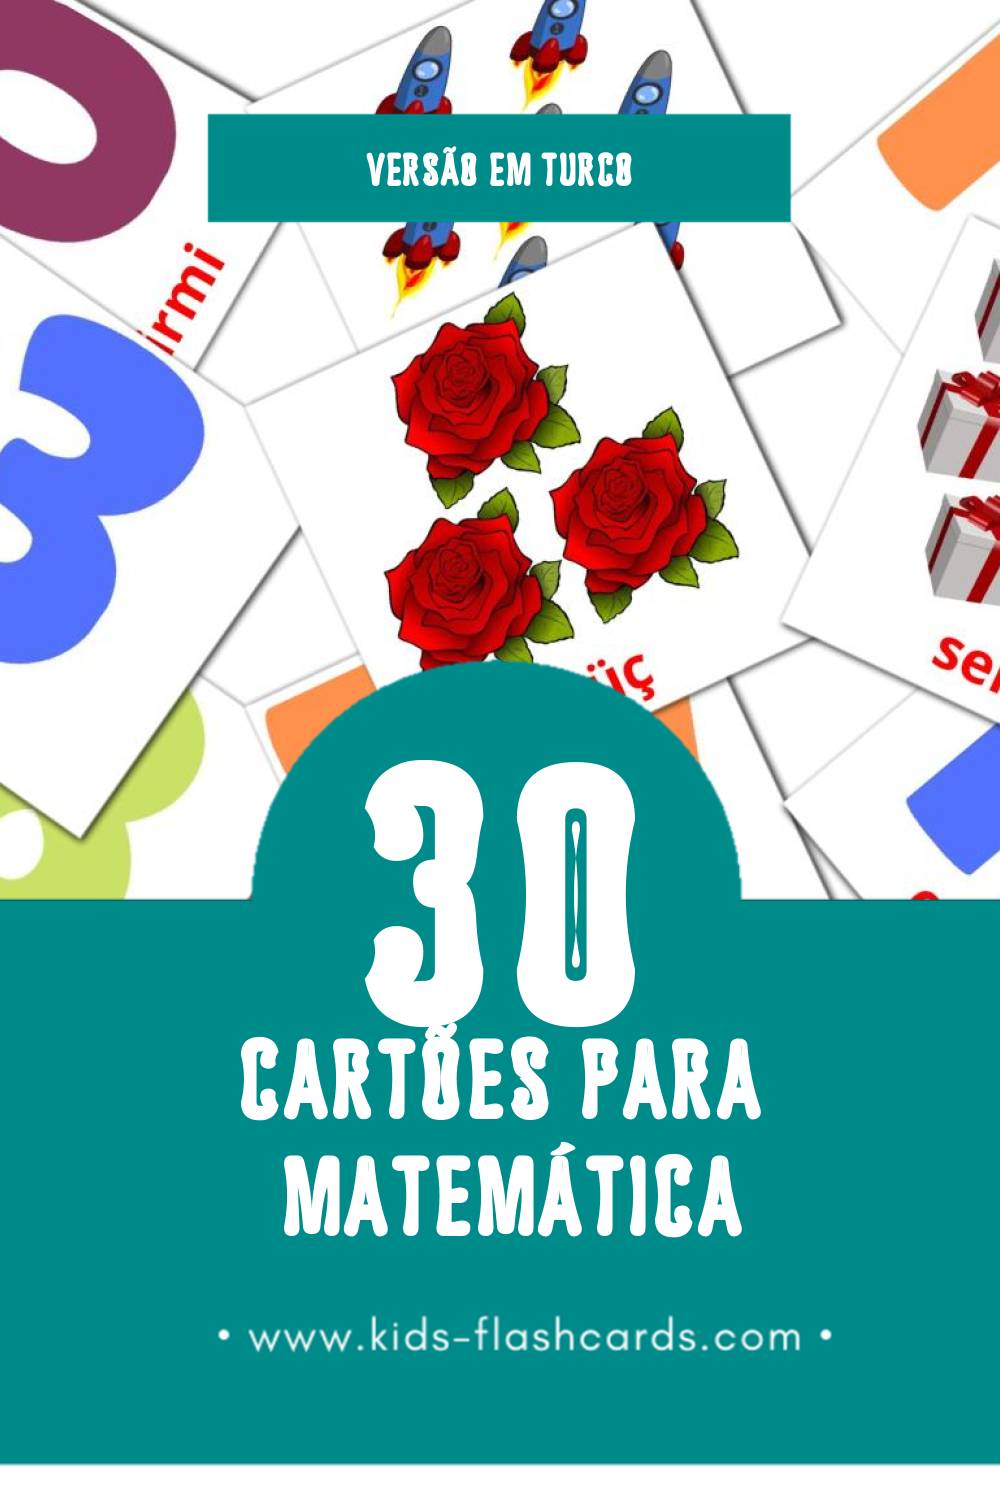 Flashcards de математике Visuais para Toddlers (30 cartões em Turco)